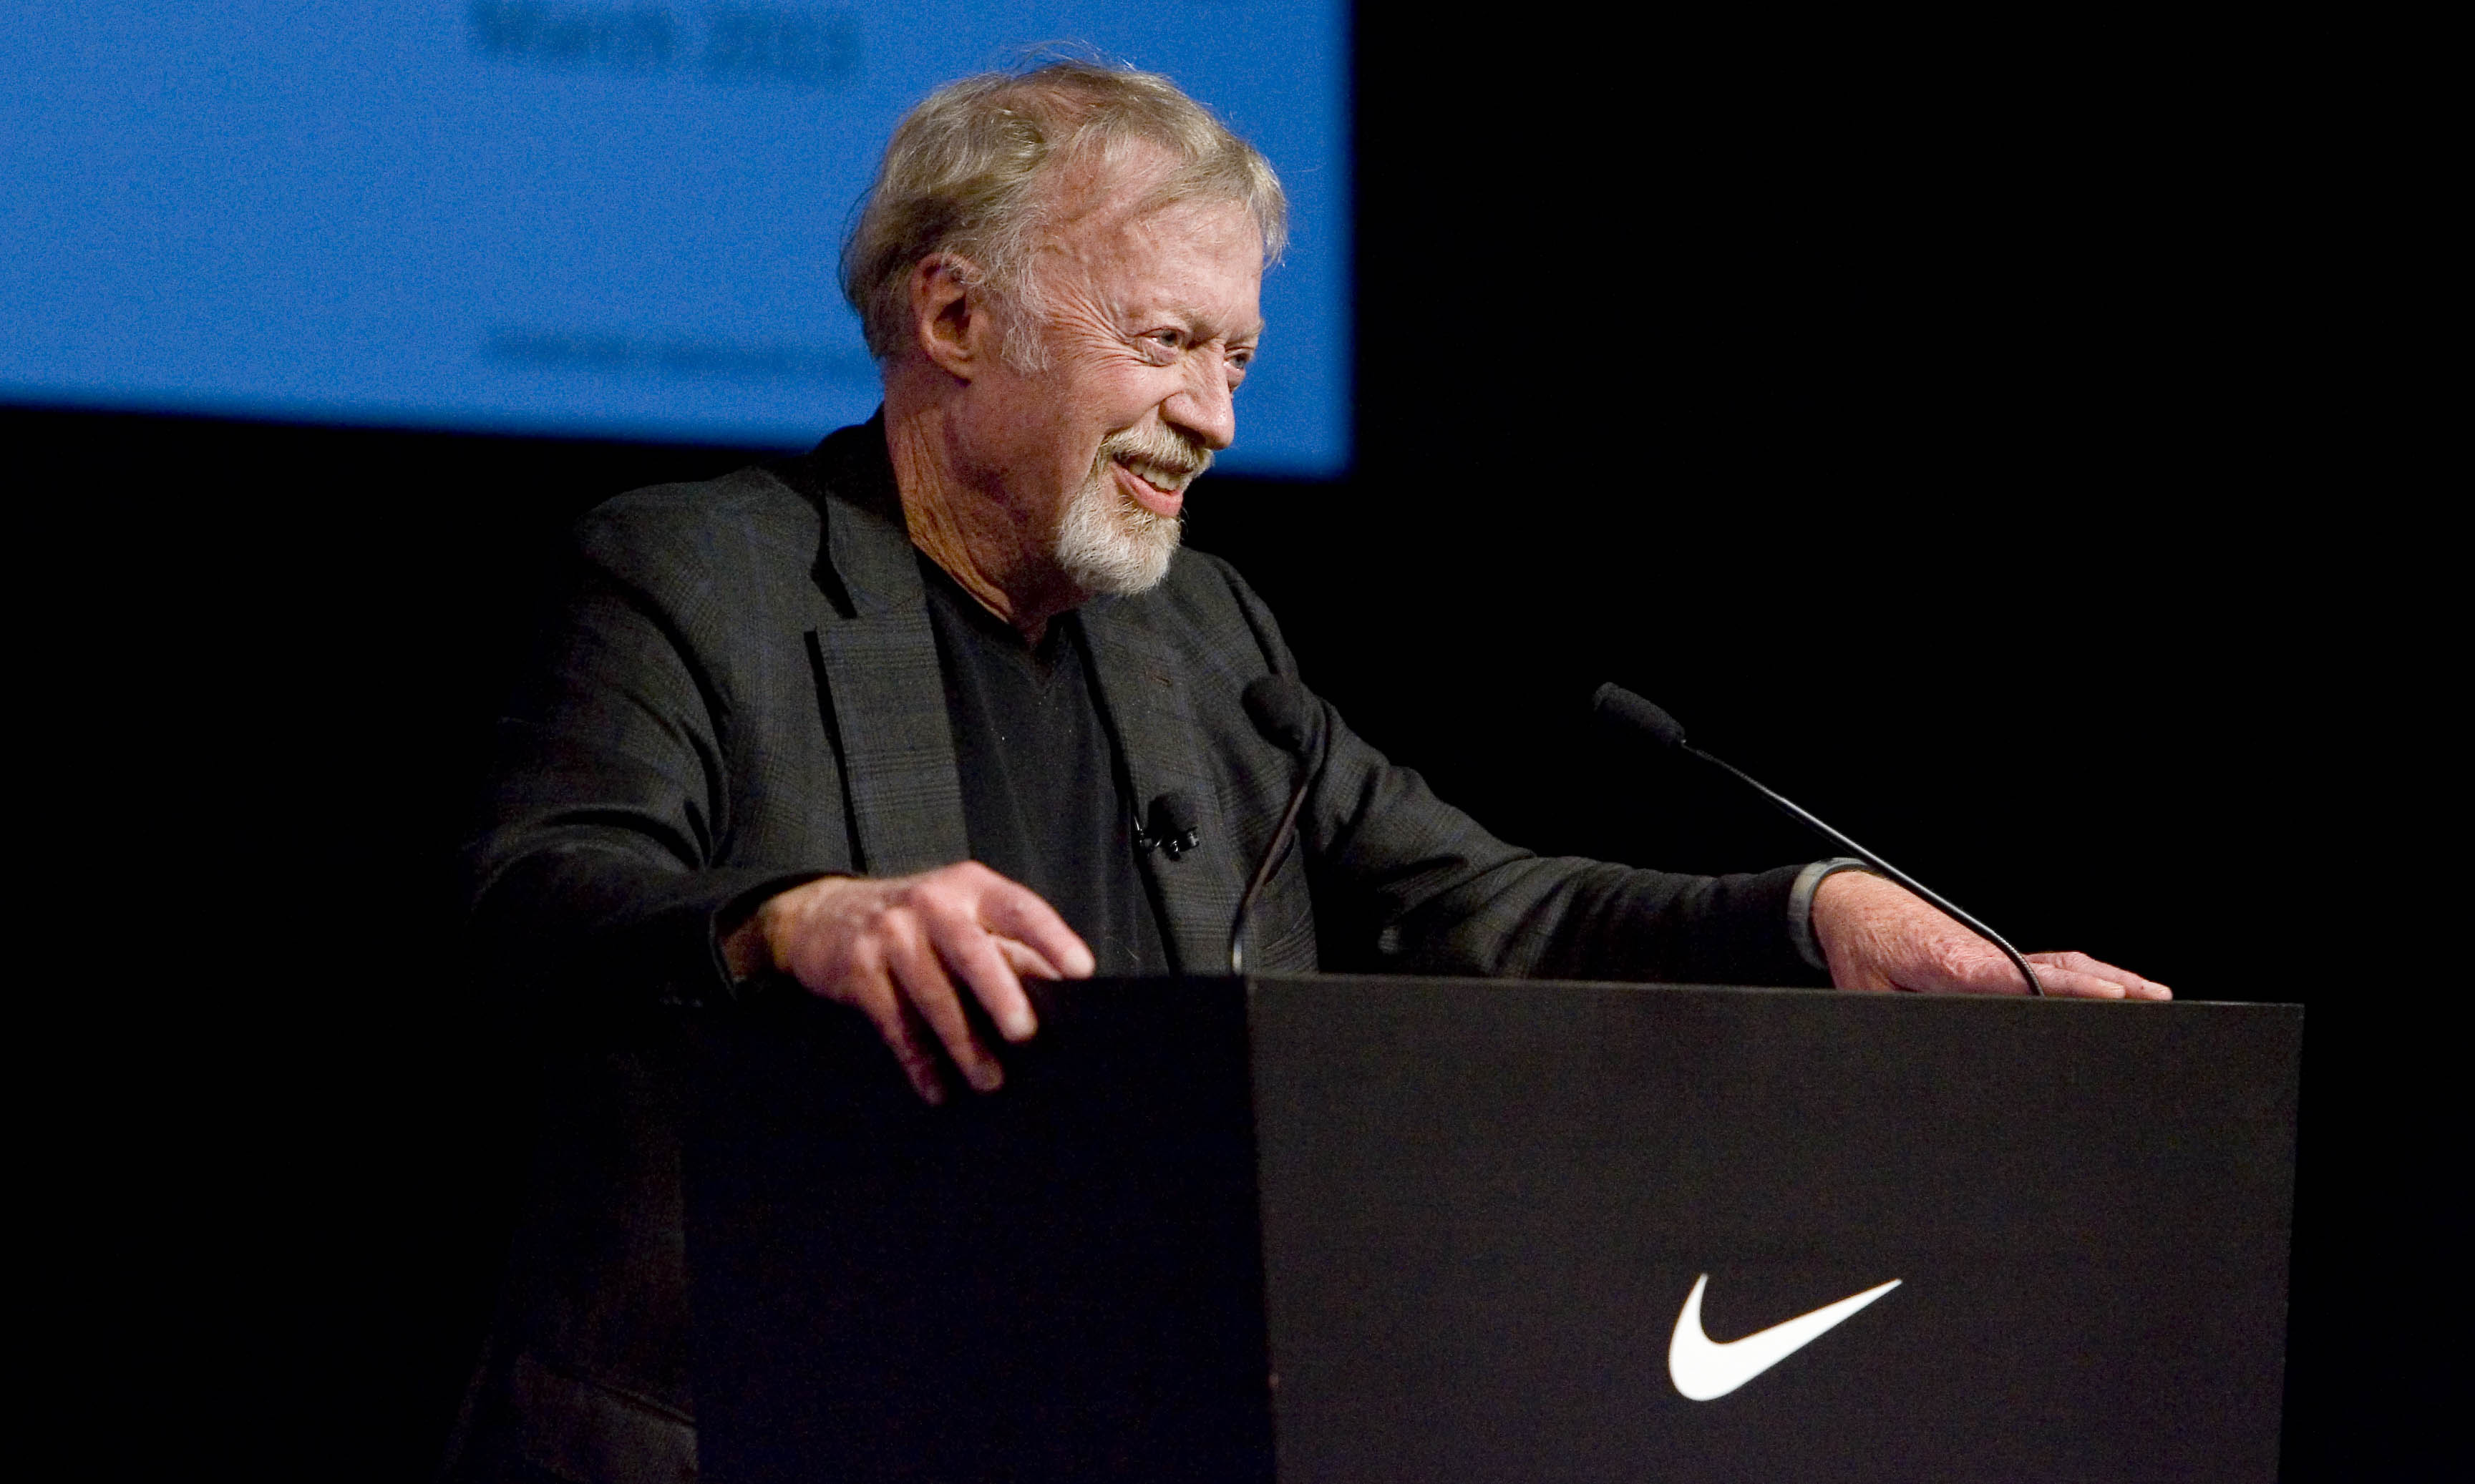 Phil Knight 捐献 10 亿美元 Nike 股份给慈善机构